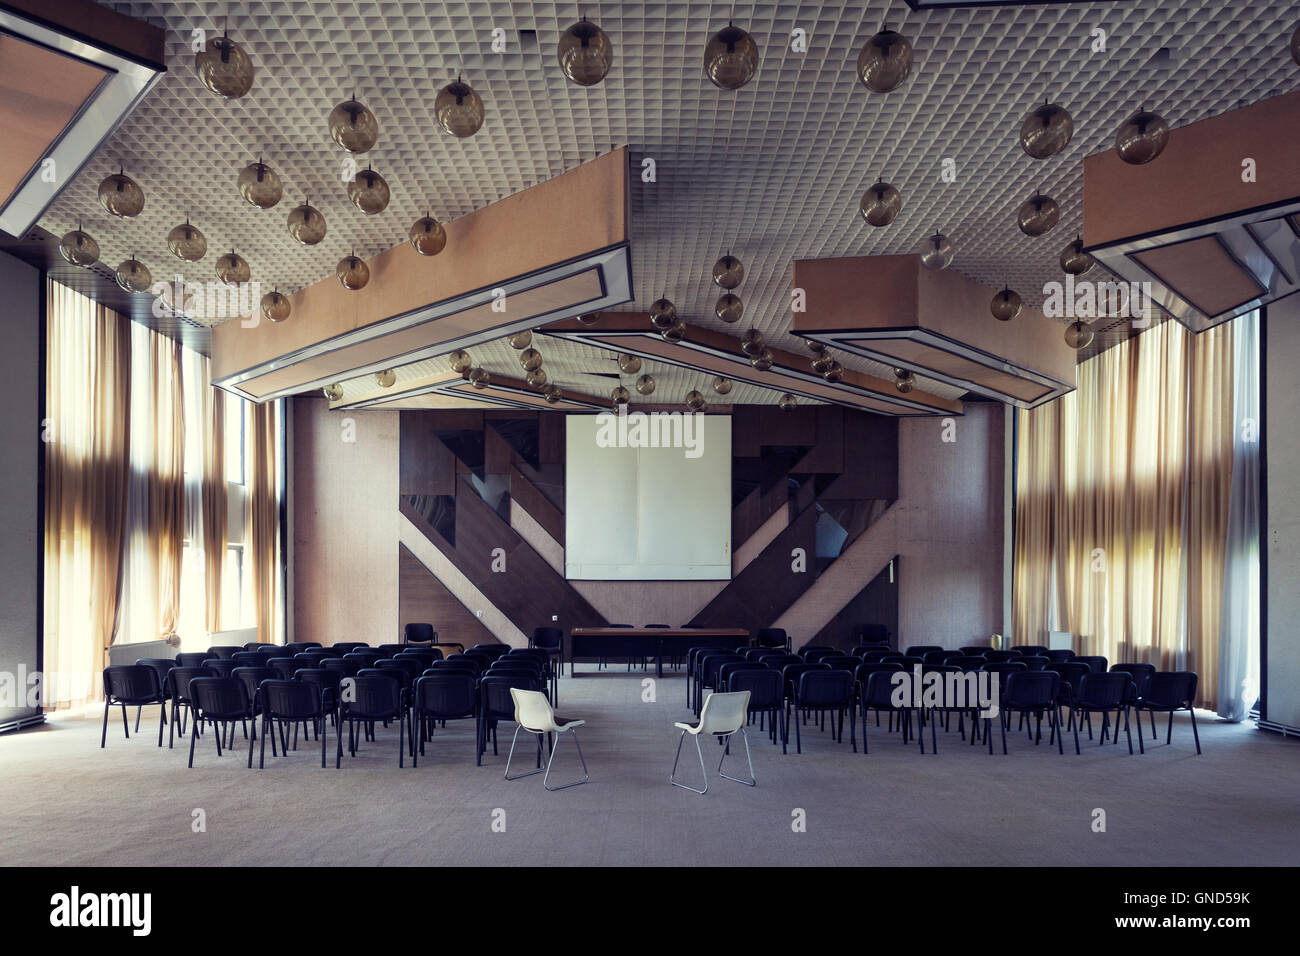 Brezovica, Kosovo - Mayo 6, 2015: La sala de conferencias de un hotel de la era comunista abandonados en la estación de esquí de Brezovica Foto de stock